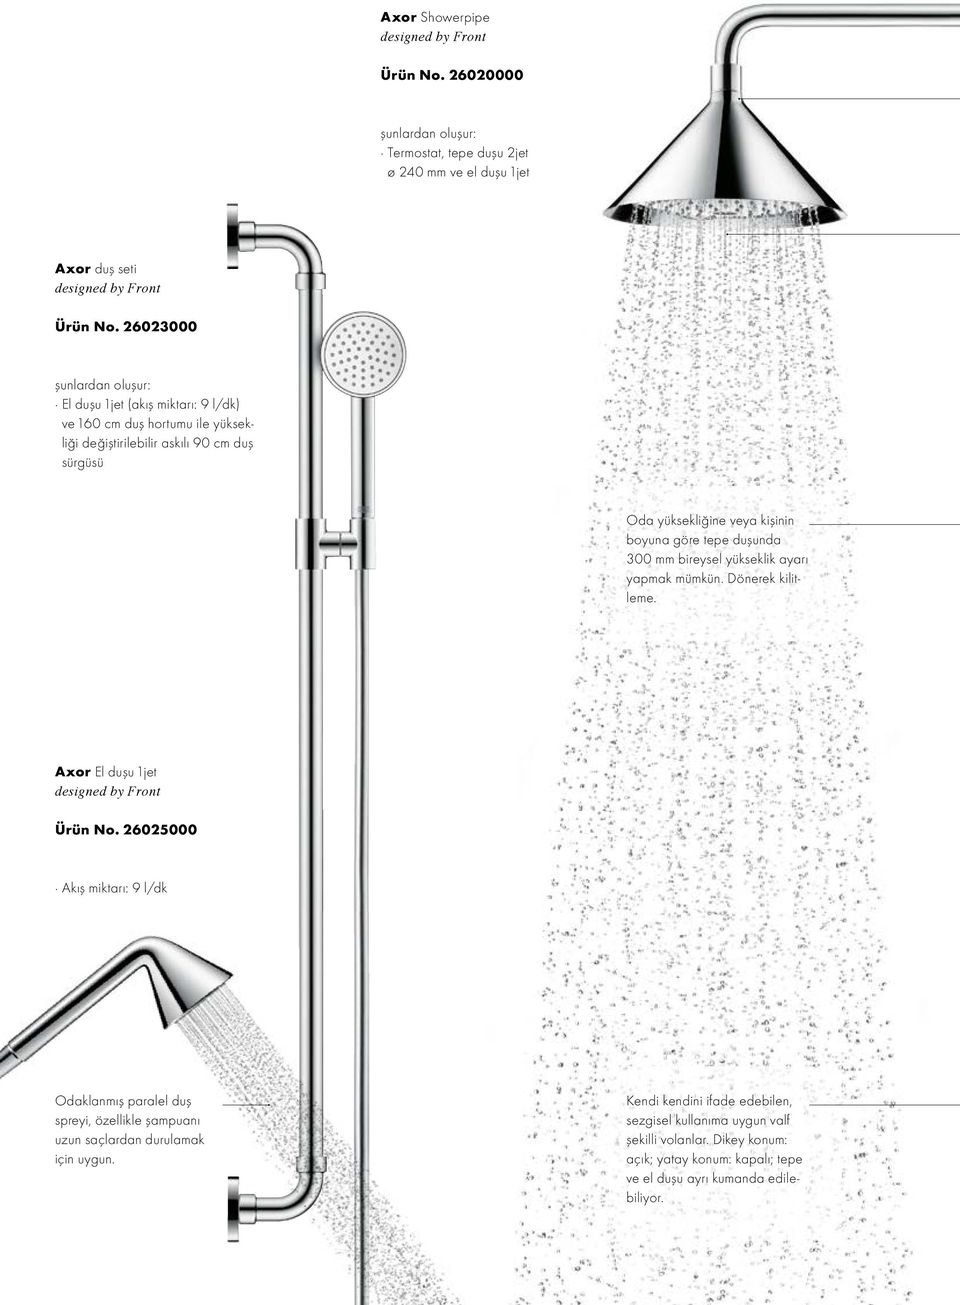 tepe duşunda 300 mm bireysel yükseklik ayarı yapmak mümkün. Dönerek kilitleme. Axor El duşu 1jet designed by Front Ürün No.